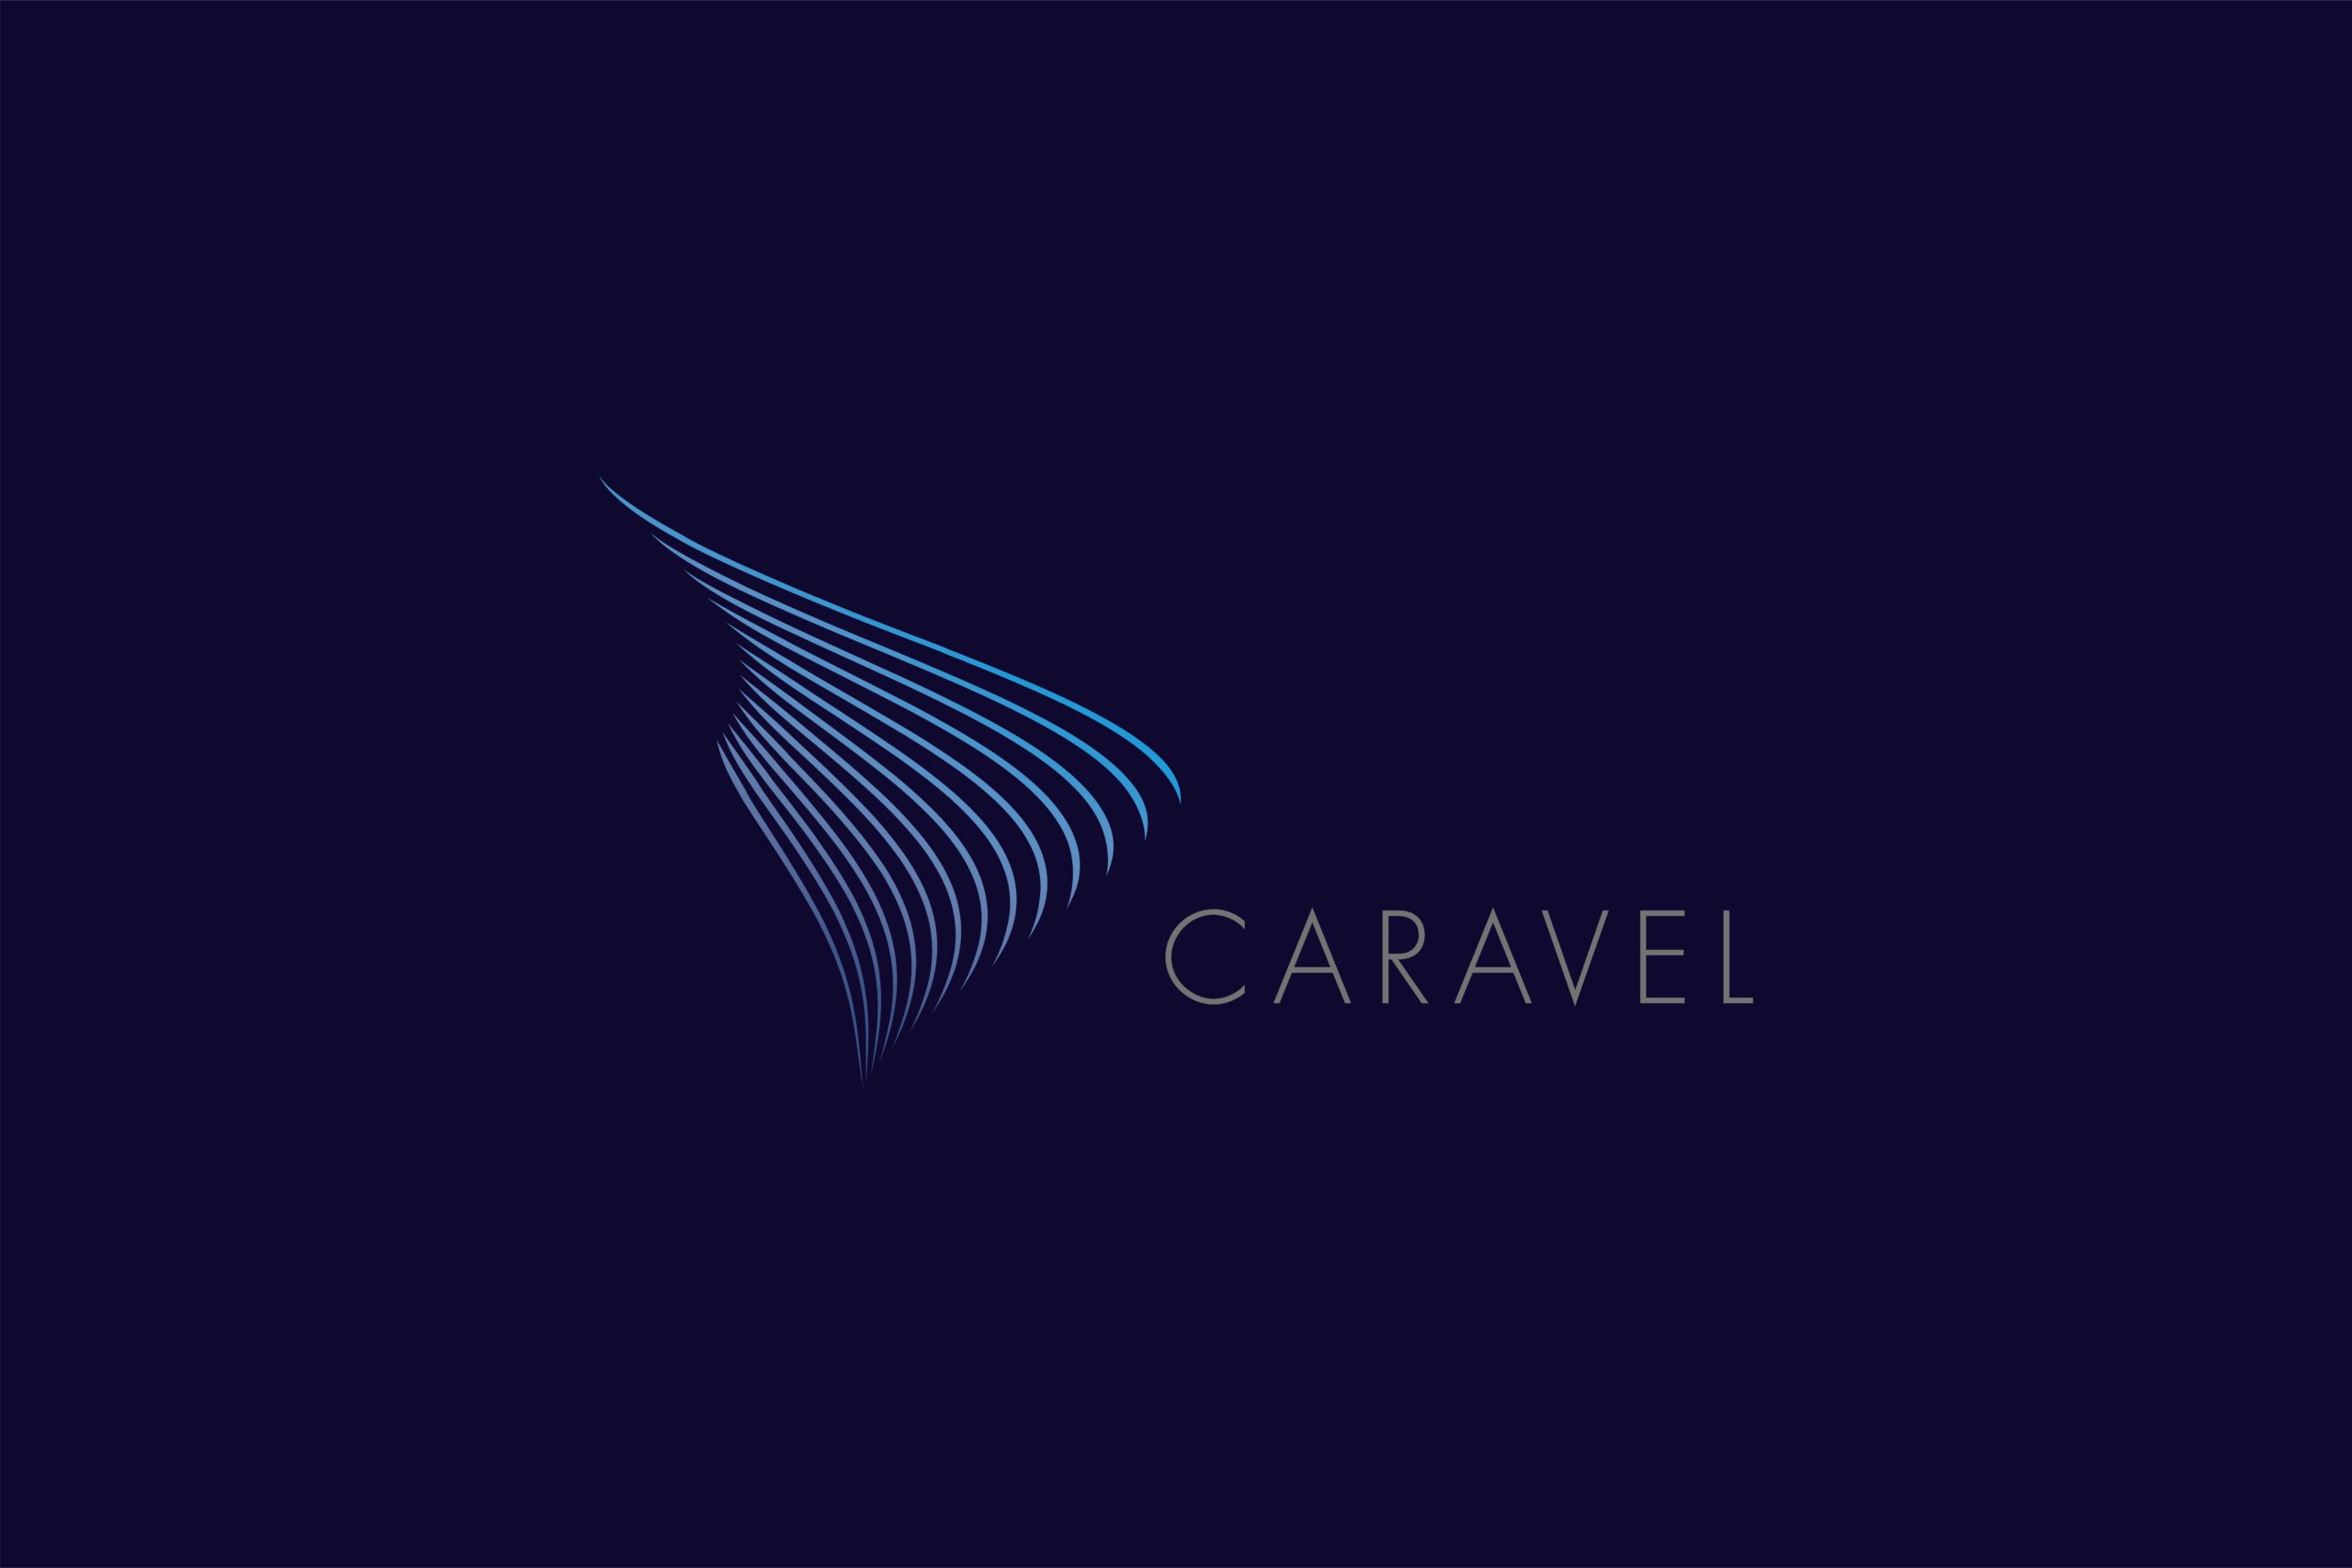 Caravel full logo on dark blue